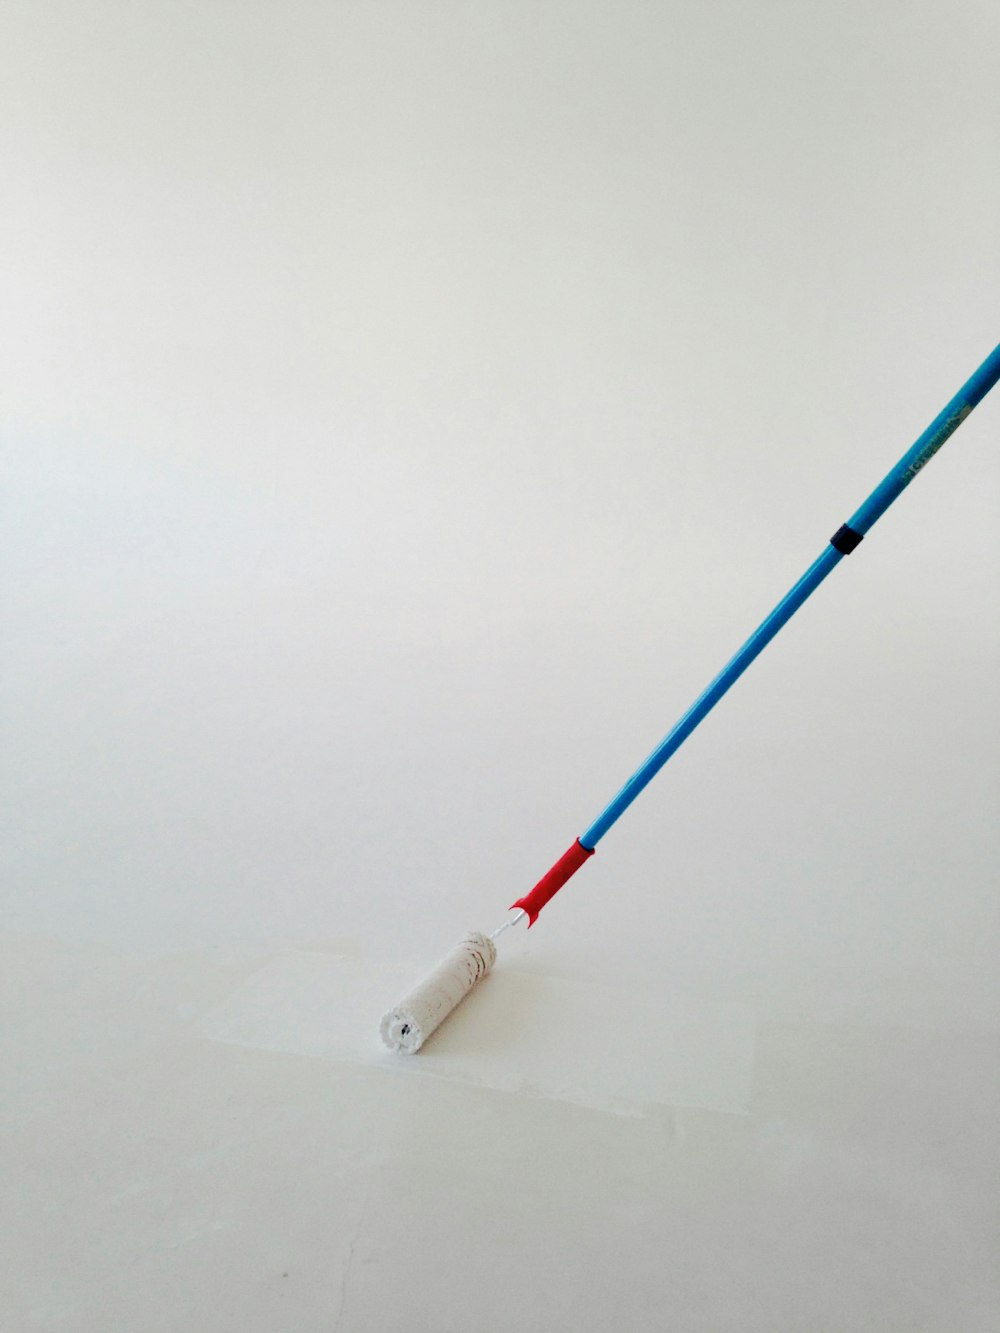 stylo blanc et bleu sur surface blanche